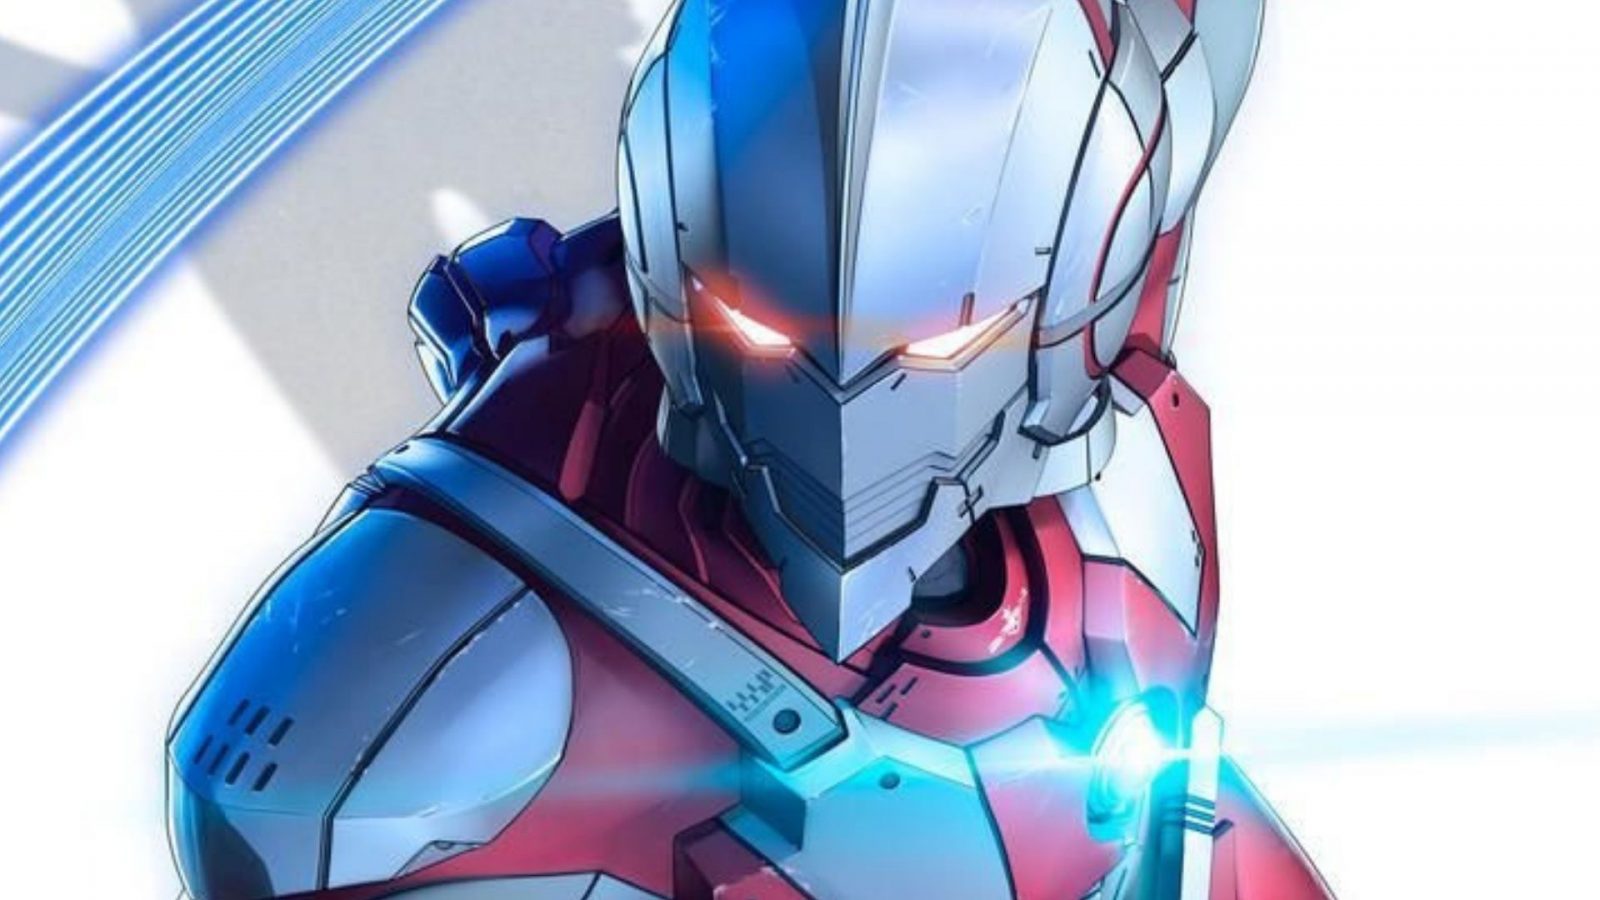 Il trailer della seconda stagione di Ultraman, la serie animata in arrivo nel 2022